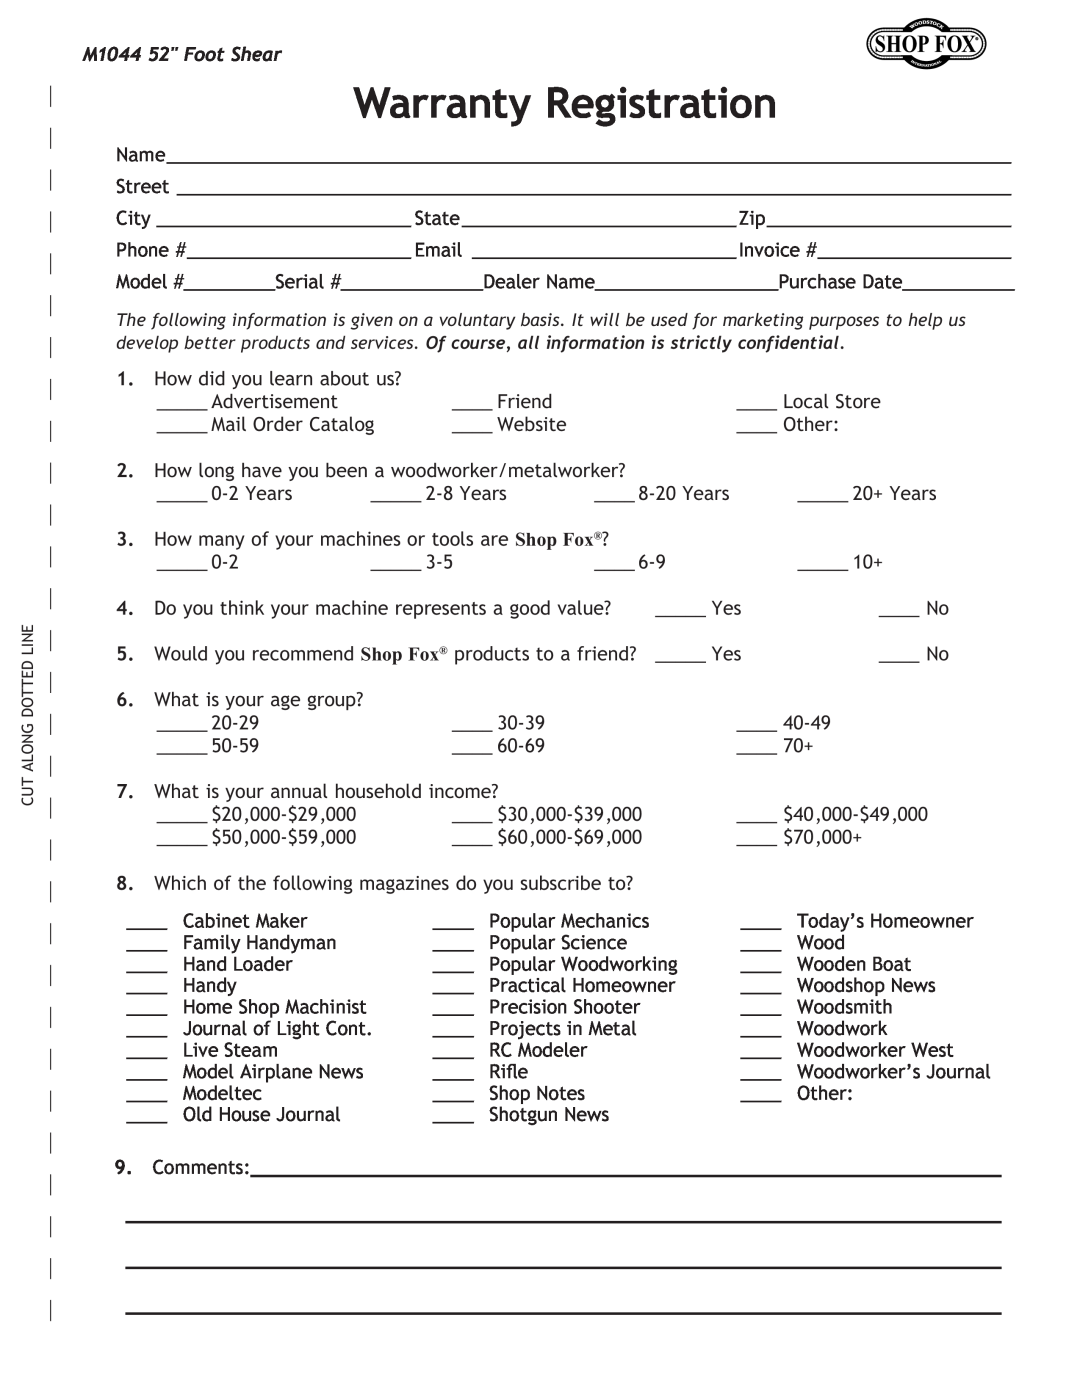 Woodstock manual Warranty Registration, Comments, M1044 52 Foot Shear 